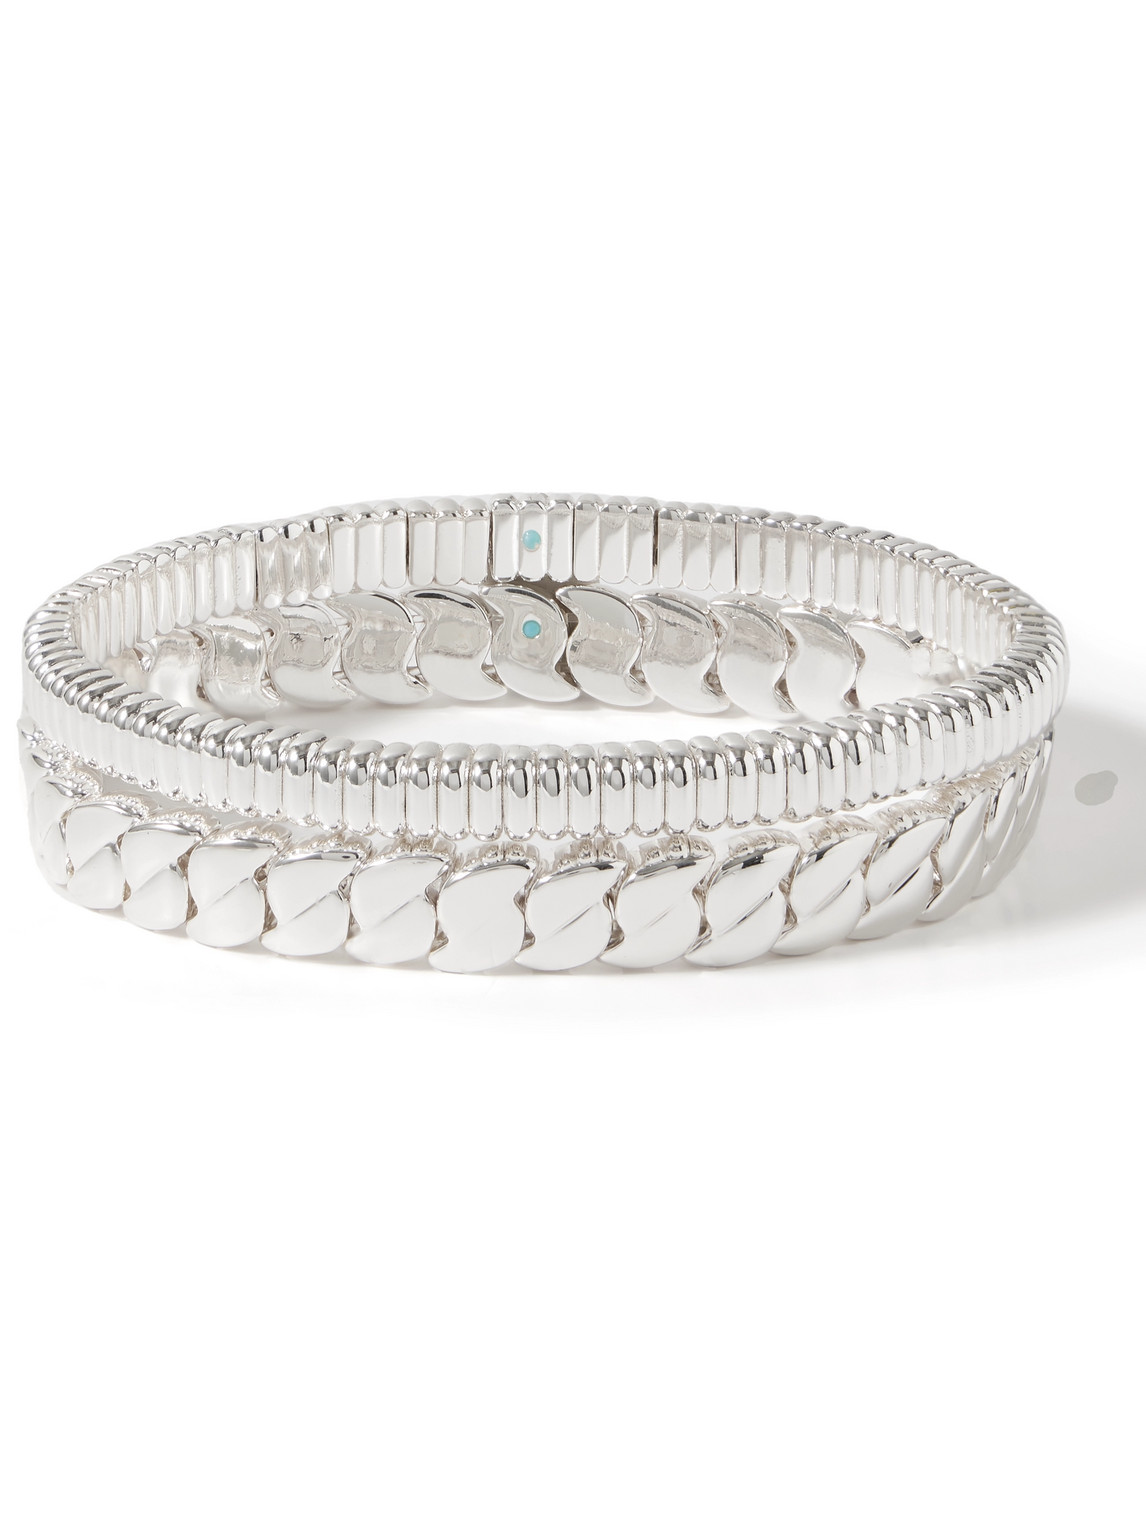 Roxanne Assoulin Set Of Two Silver-tone Beaded Bracelets